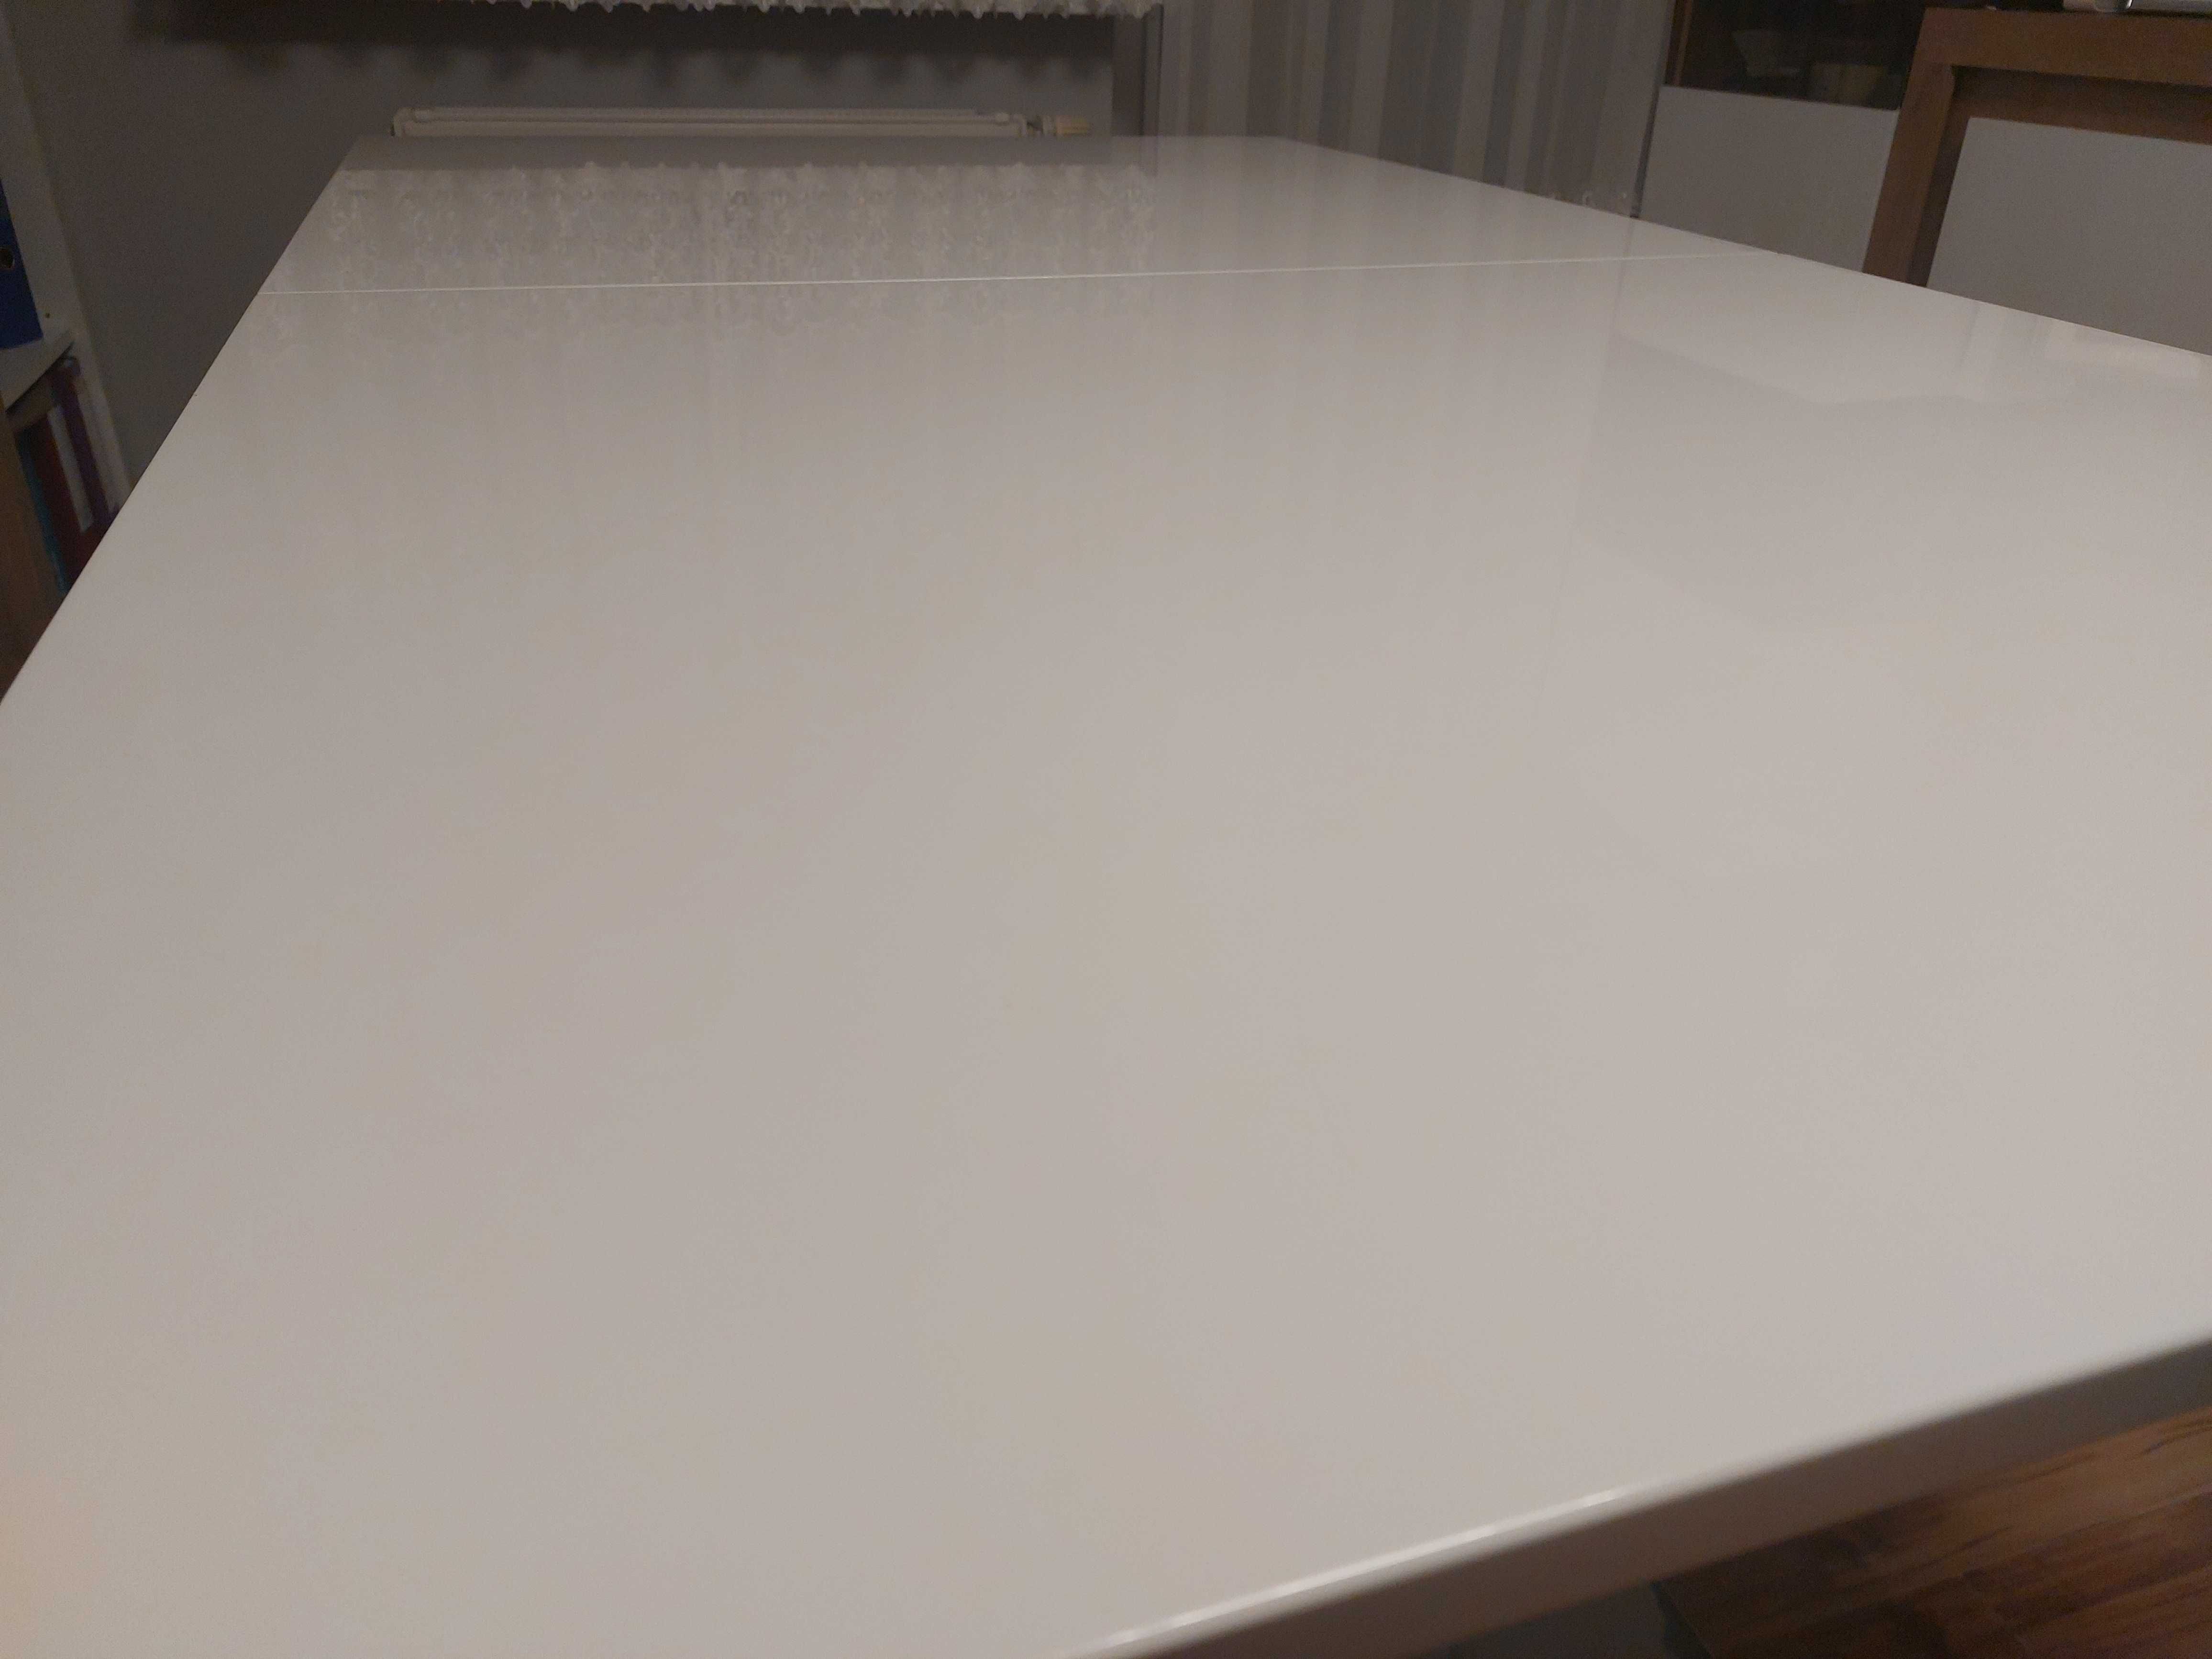 Stół rozkładany ETNO NEW T1111